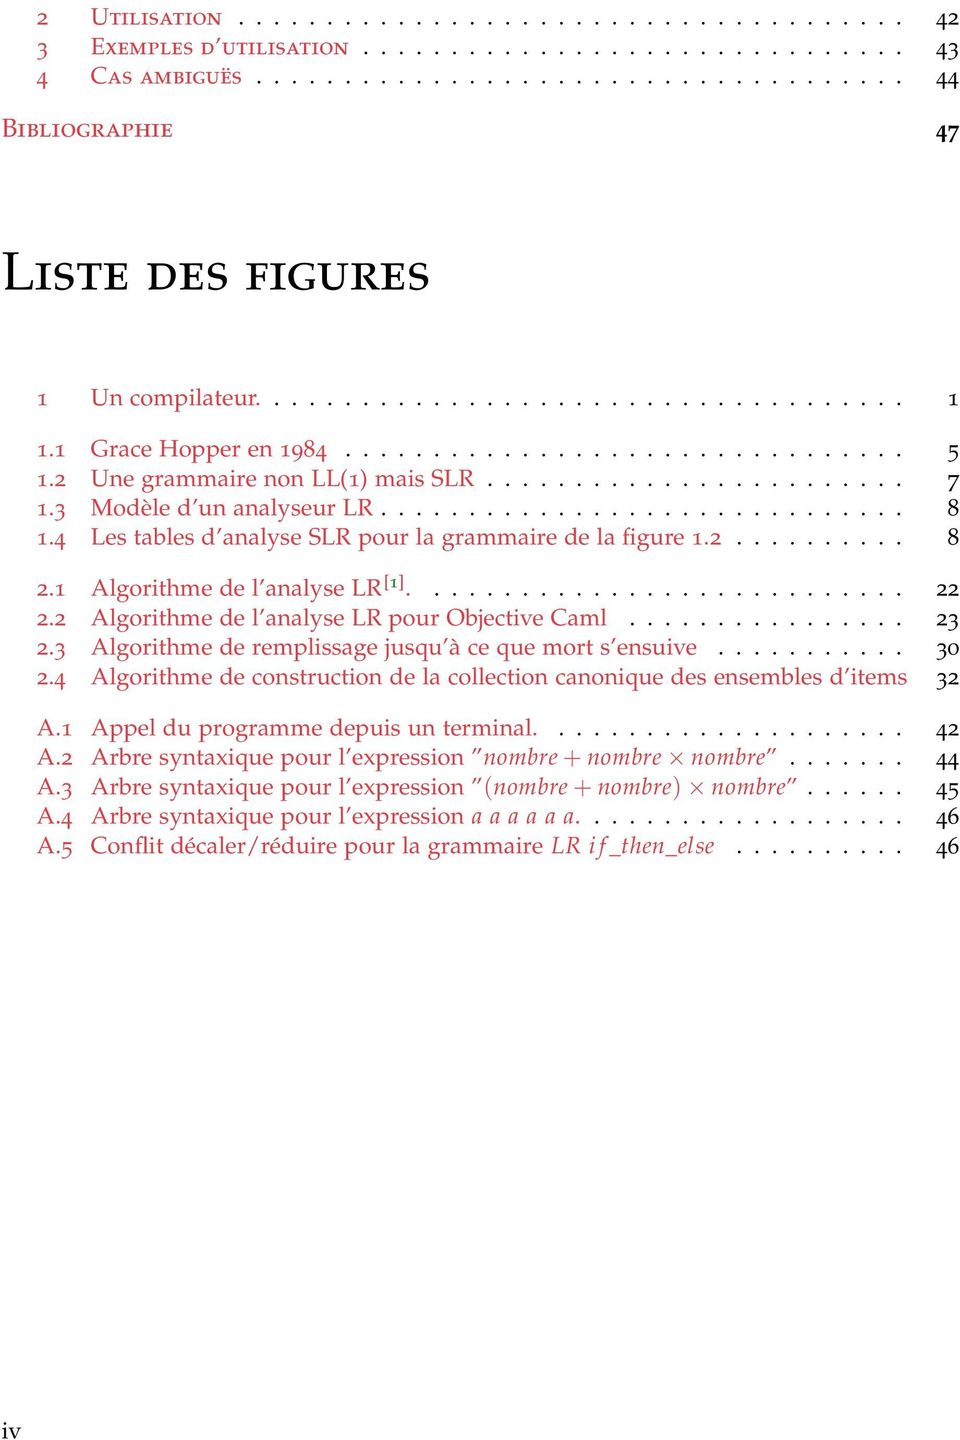 4 Les tables d analyse SLR pour la grammaire de la figure 1.2.......... 8 2.1 Algorithme de l analyse LR [1]............................ 22 2.2 Algorithme de l analyse LR pour Objective Caml................ 23 2.